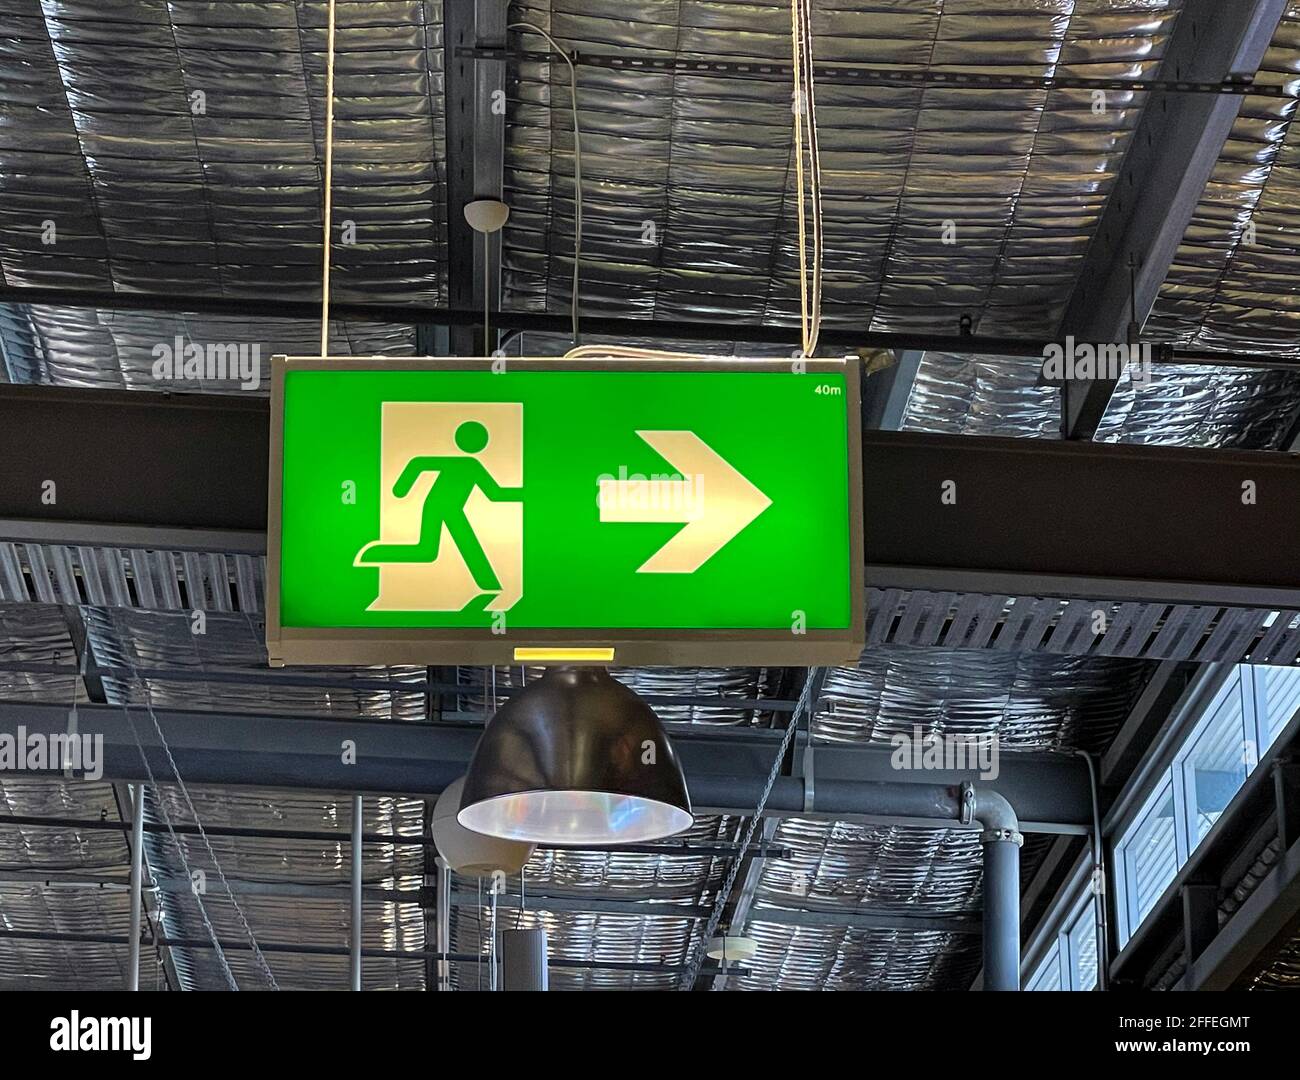 Negozio classico Fire Exit e Emergency Escape nel area pubblica di un centro commerciale raffigurante una corsa uomo e una freccia che indica le direzioni Foto Stock